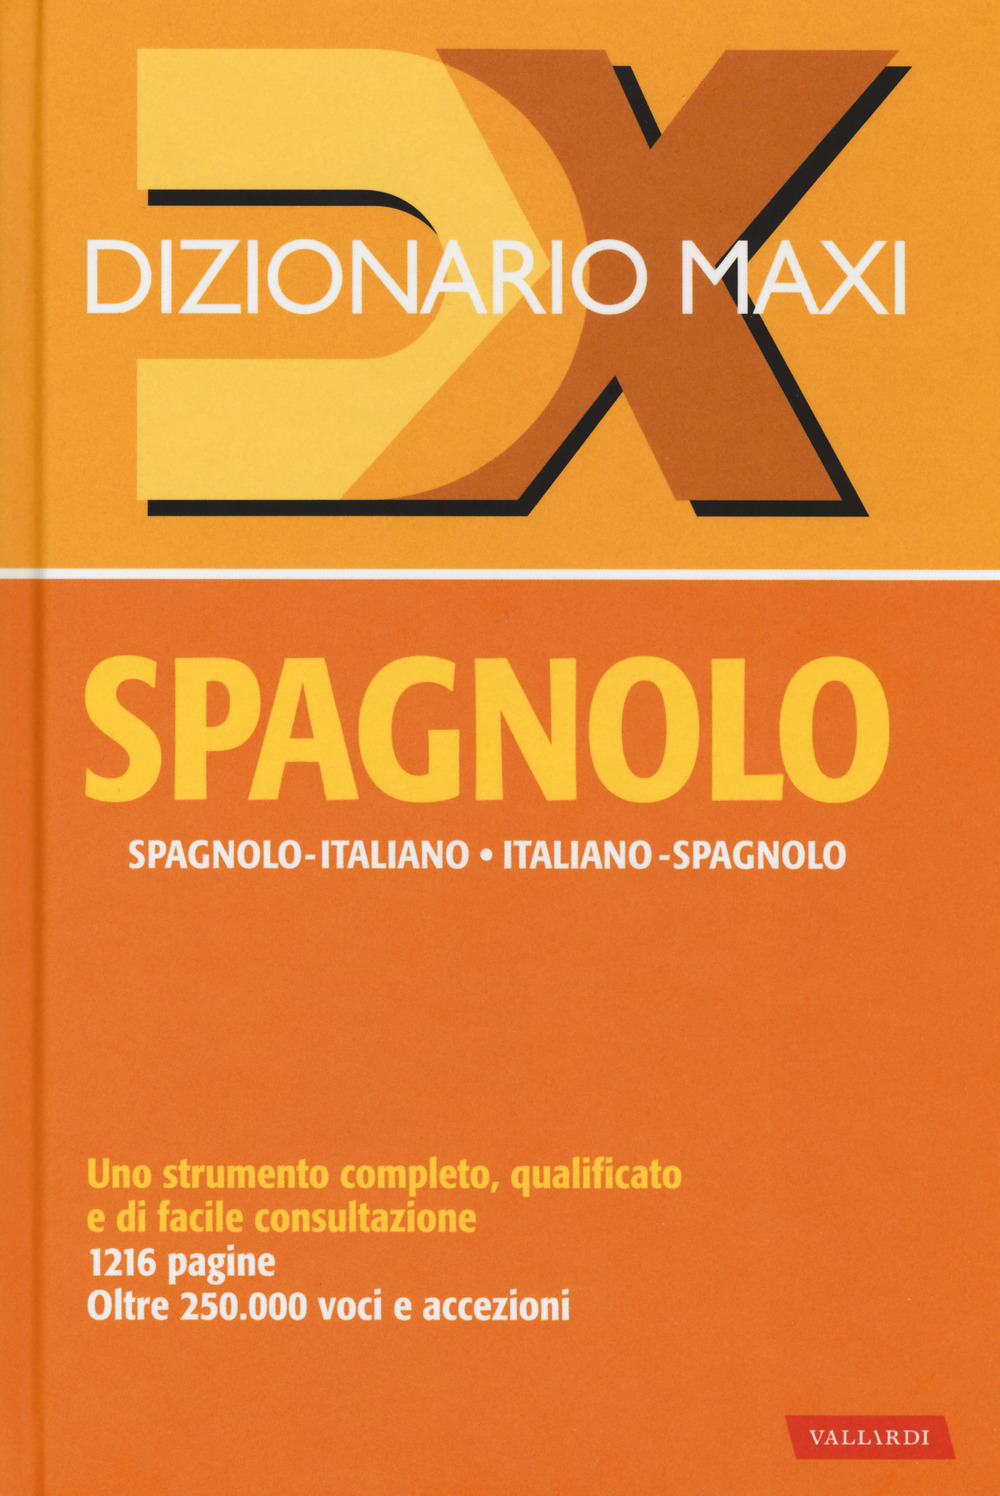 Image of Dizionario maxi. Spagnolo. Spagnolo-italiano, italiano spagnolo. Nuova ediz.